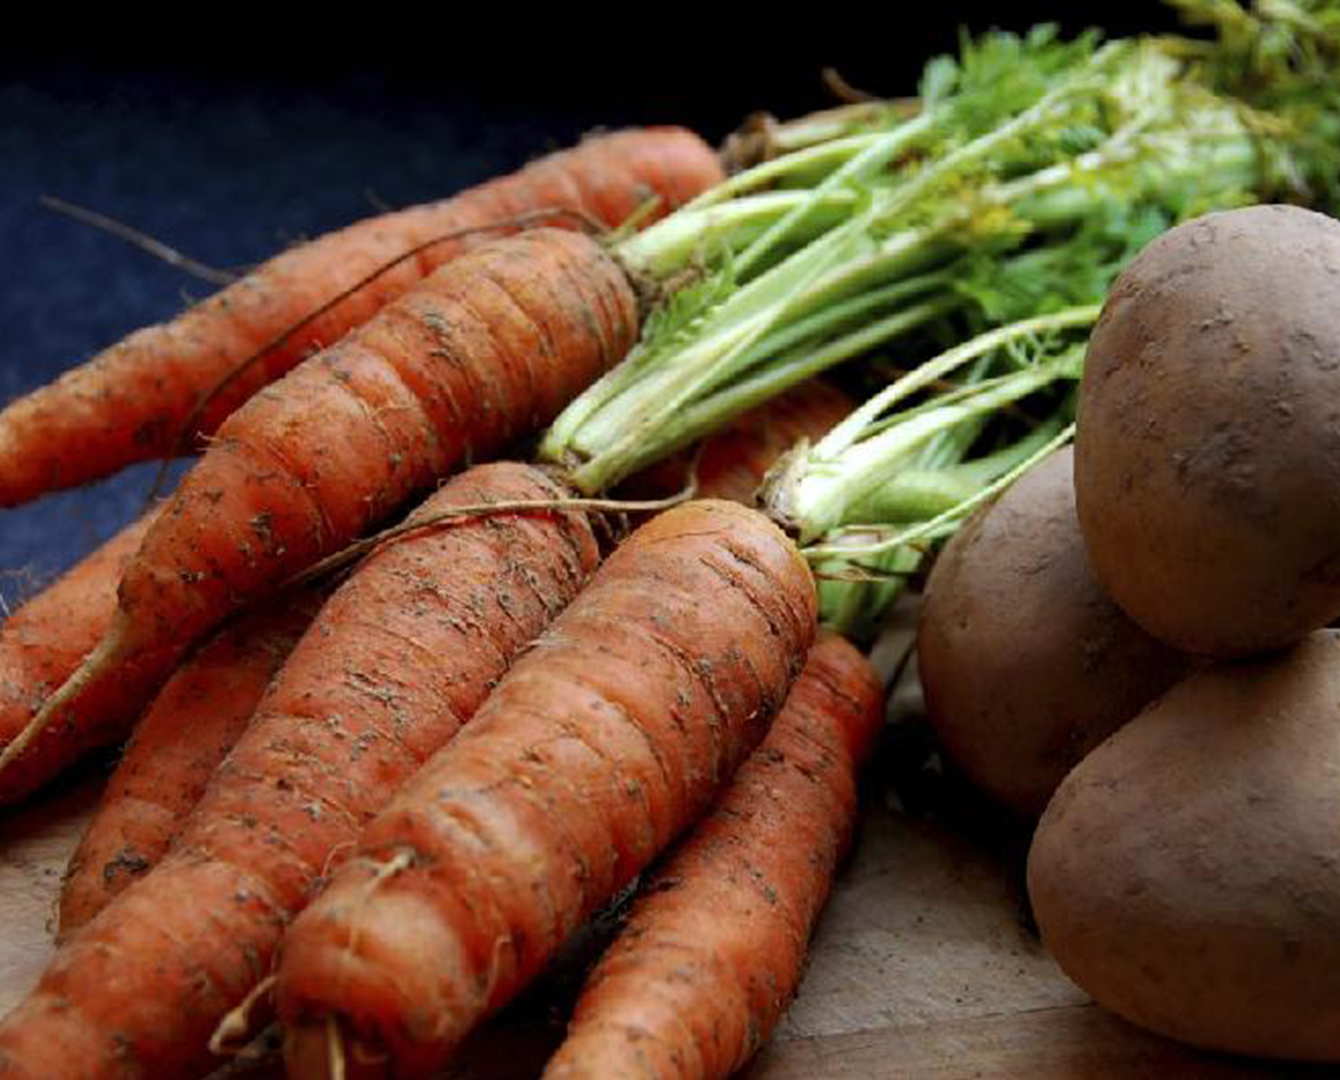 Картофель и морковь